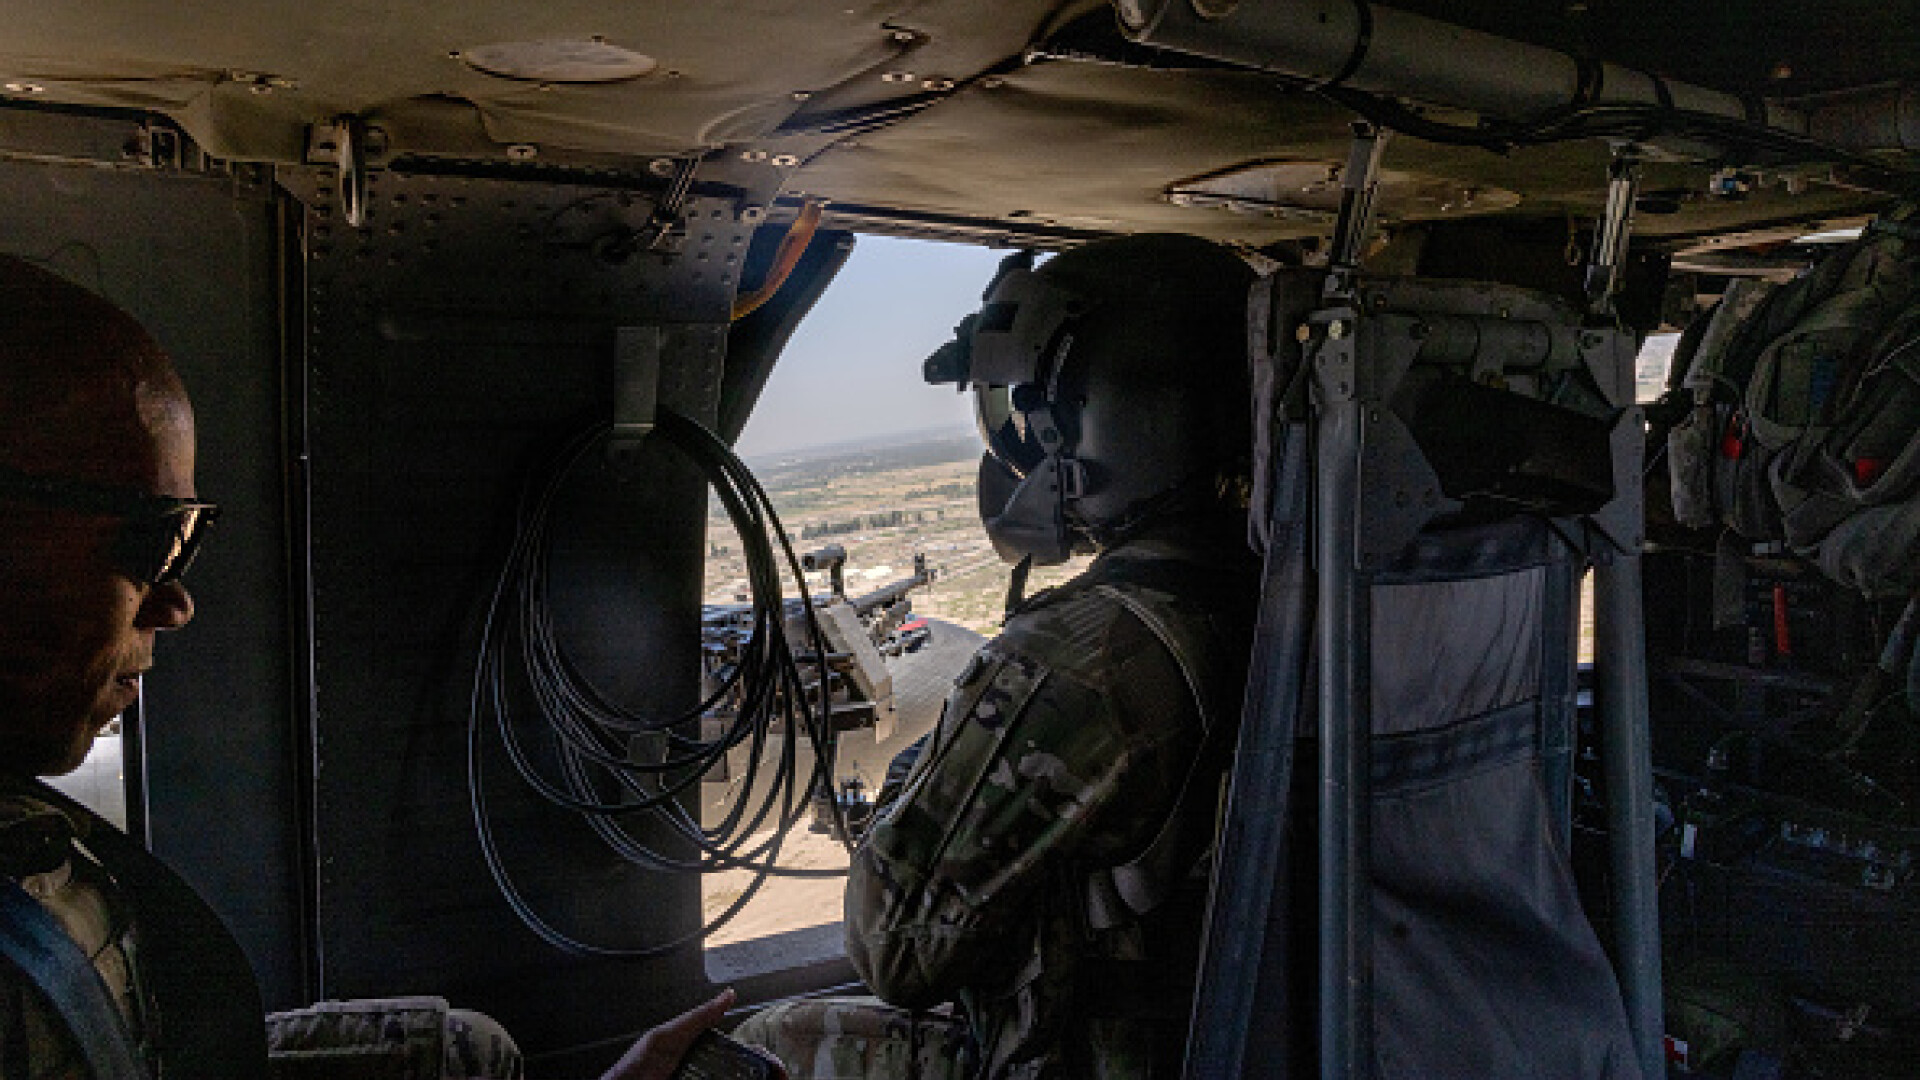 Elicopter militar Black Hawk, prăbușit în Filipine. Șase persoane au murit